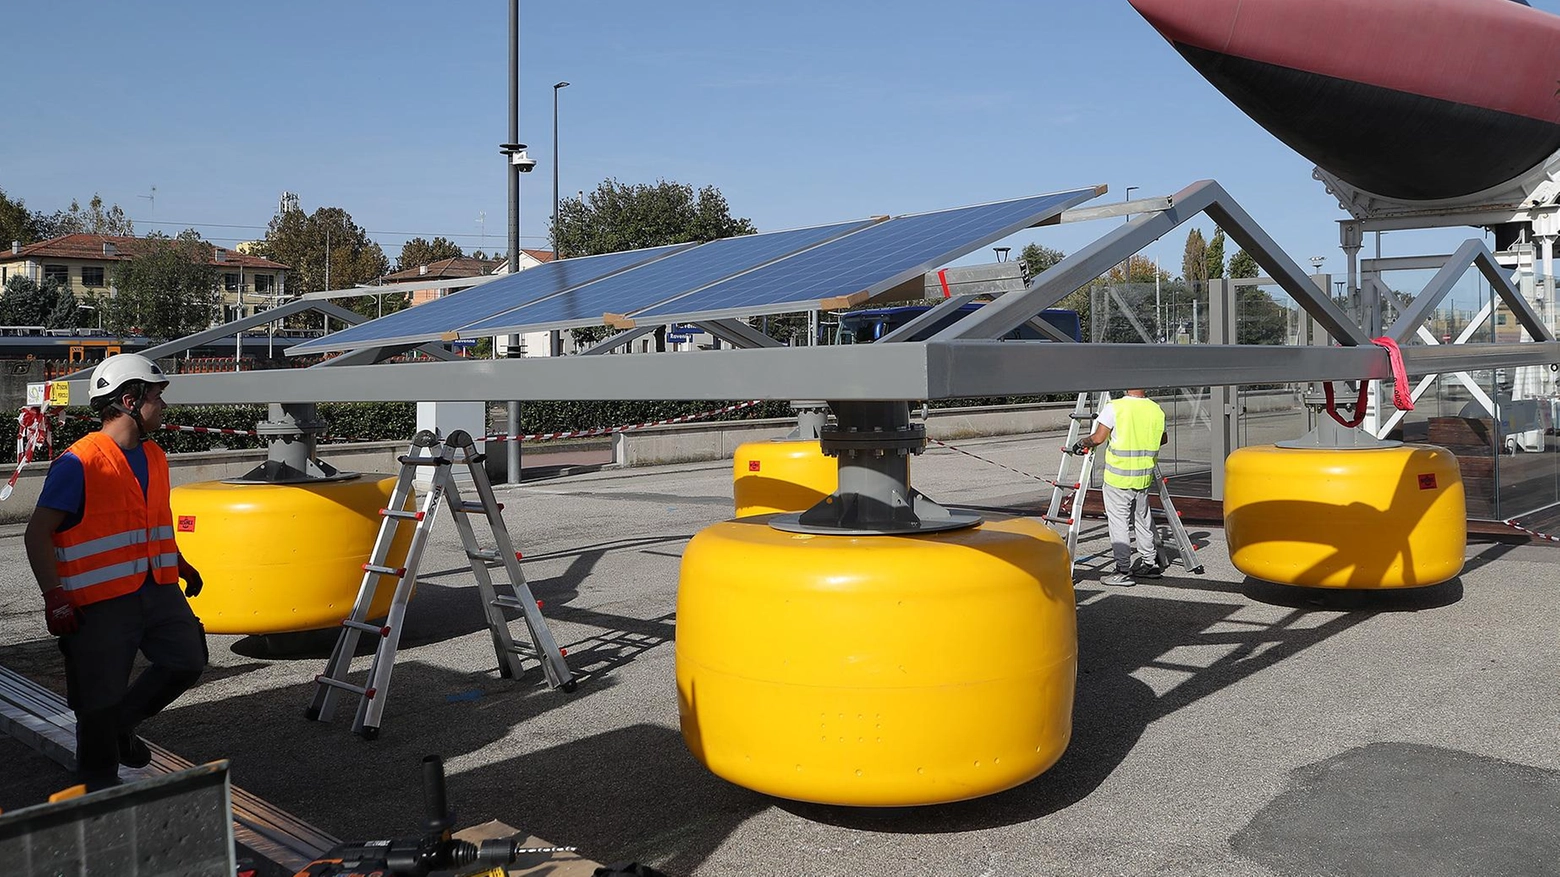 Buone notizie per il polo eolico e per l’idrogeno verde a mare, che produrrà energia per 500mila famiglie in Romagna. L’ad Bernabini: "Speriamo di essere in fondo".